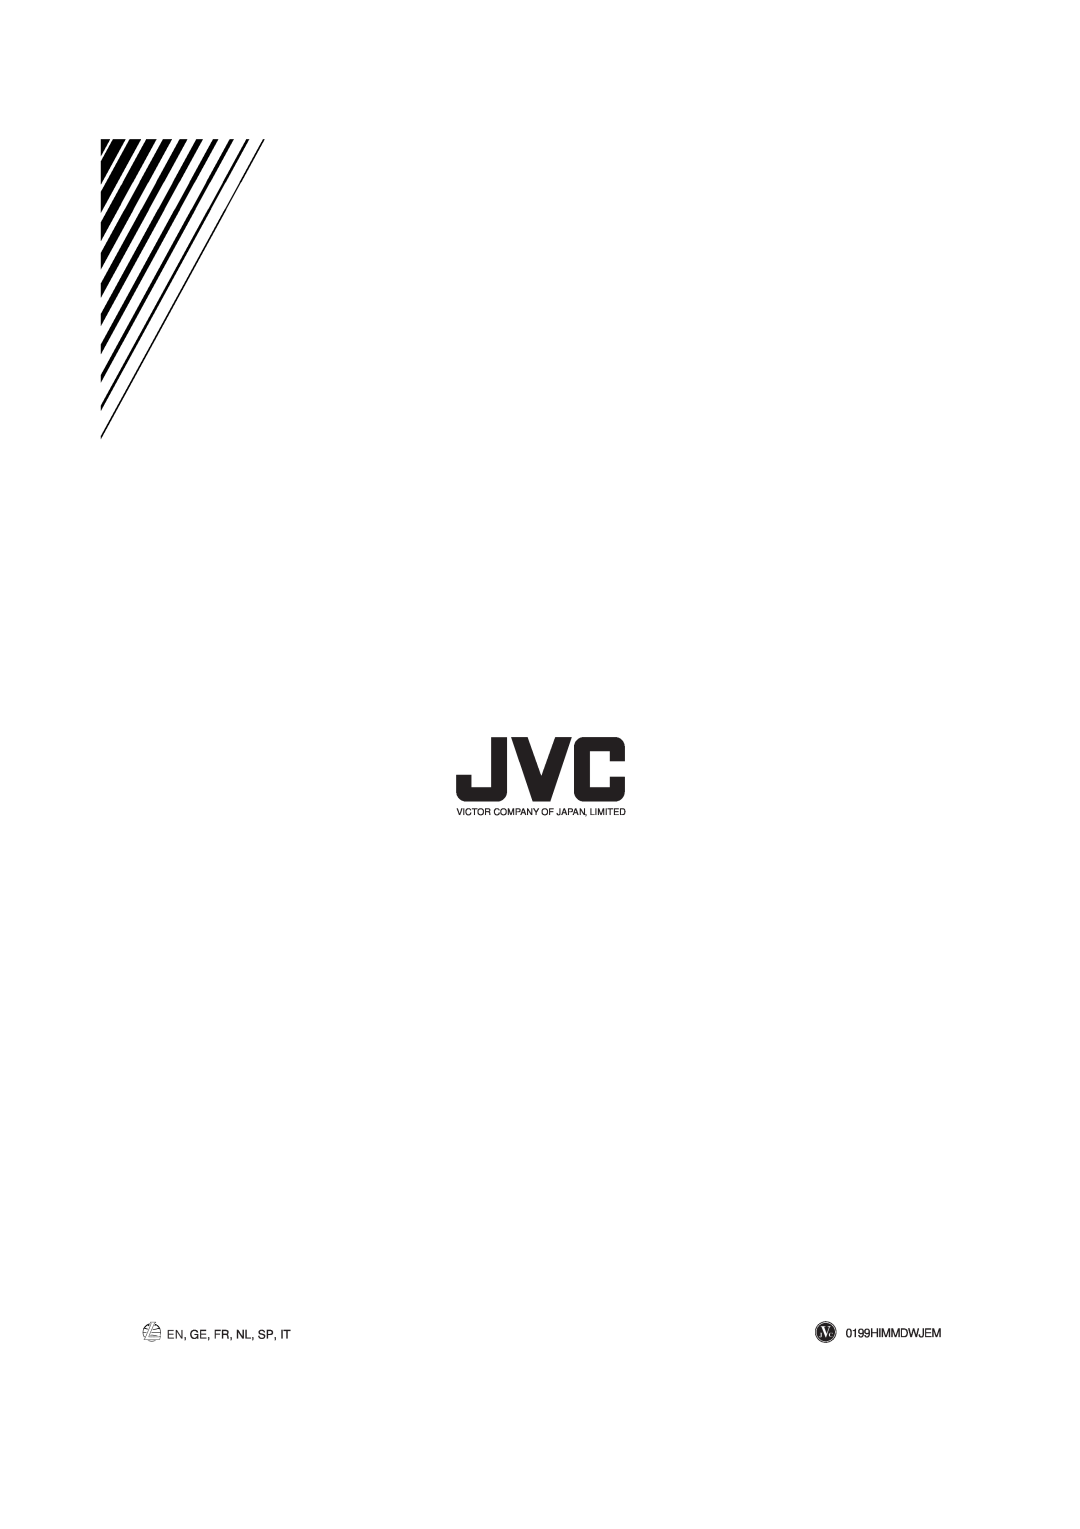 JVC AX-V55BK manual En, Ge, Fr, Nl, Sp, It, 0199HIMMDWJEM, Victor Company Of Japan, Limited 